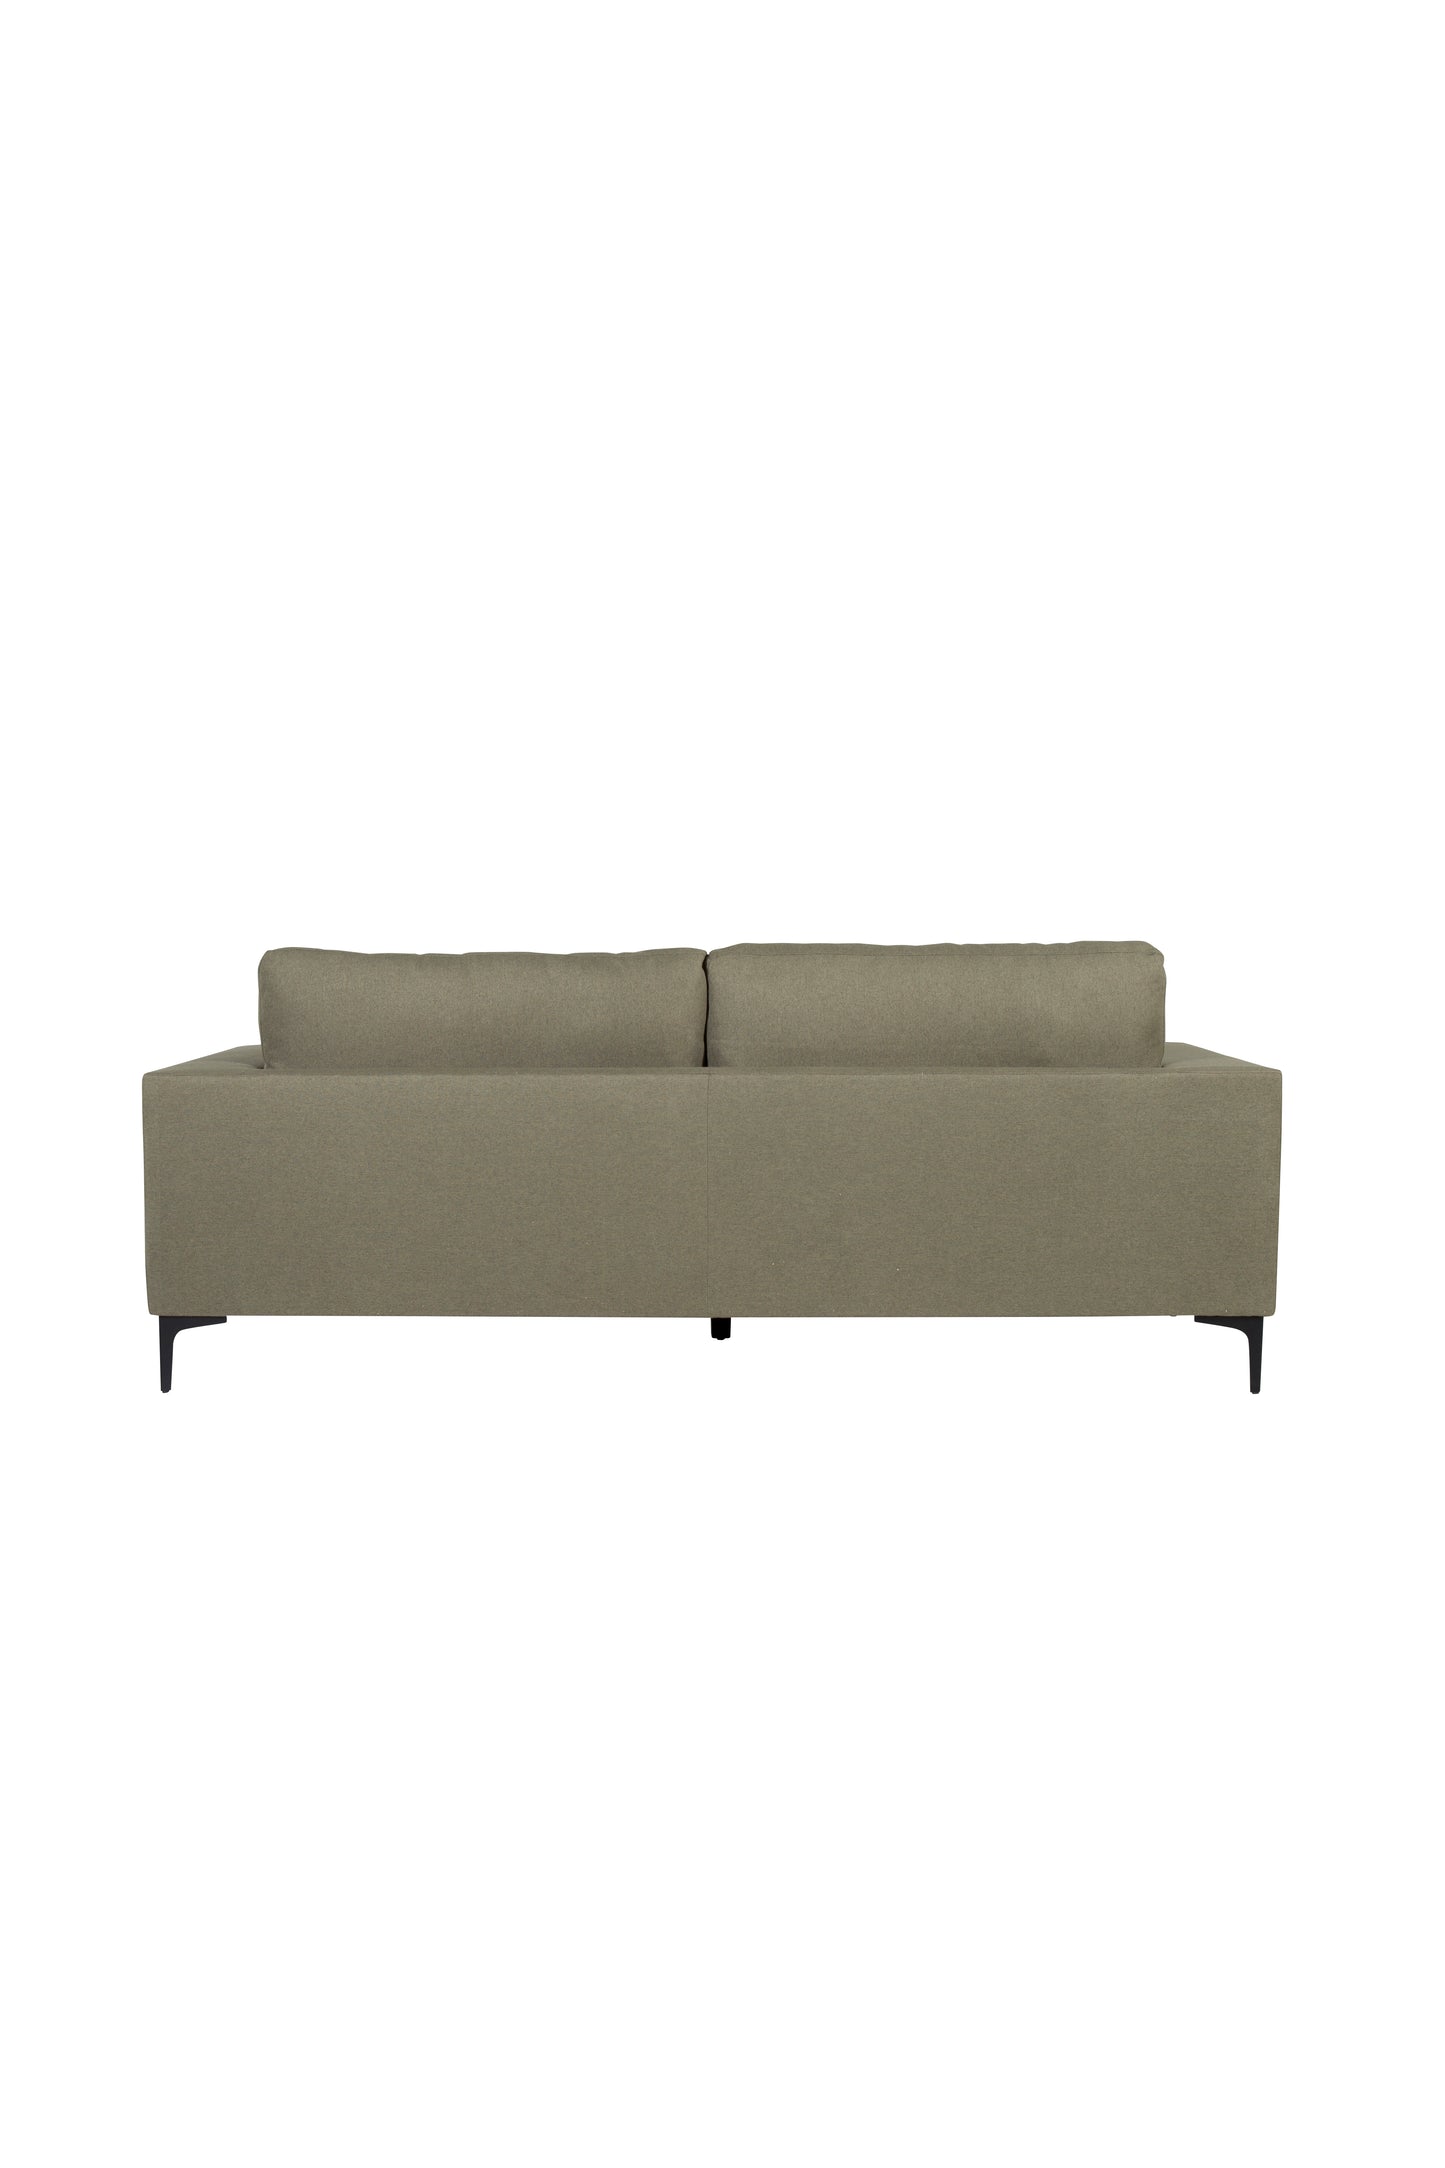 Venture-Design | Bolero Sofa - 3-Sitzer - Staubgrüner Stoff - Schwarze Beine